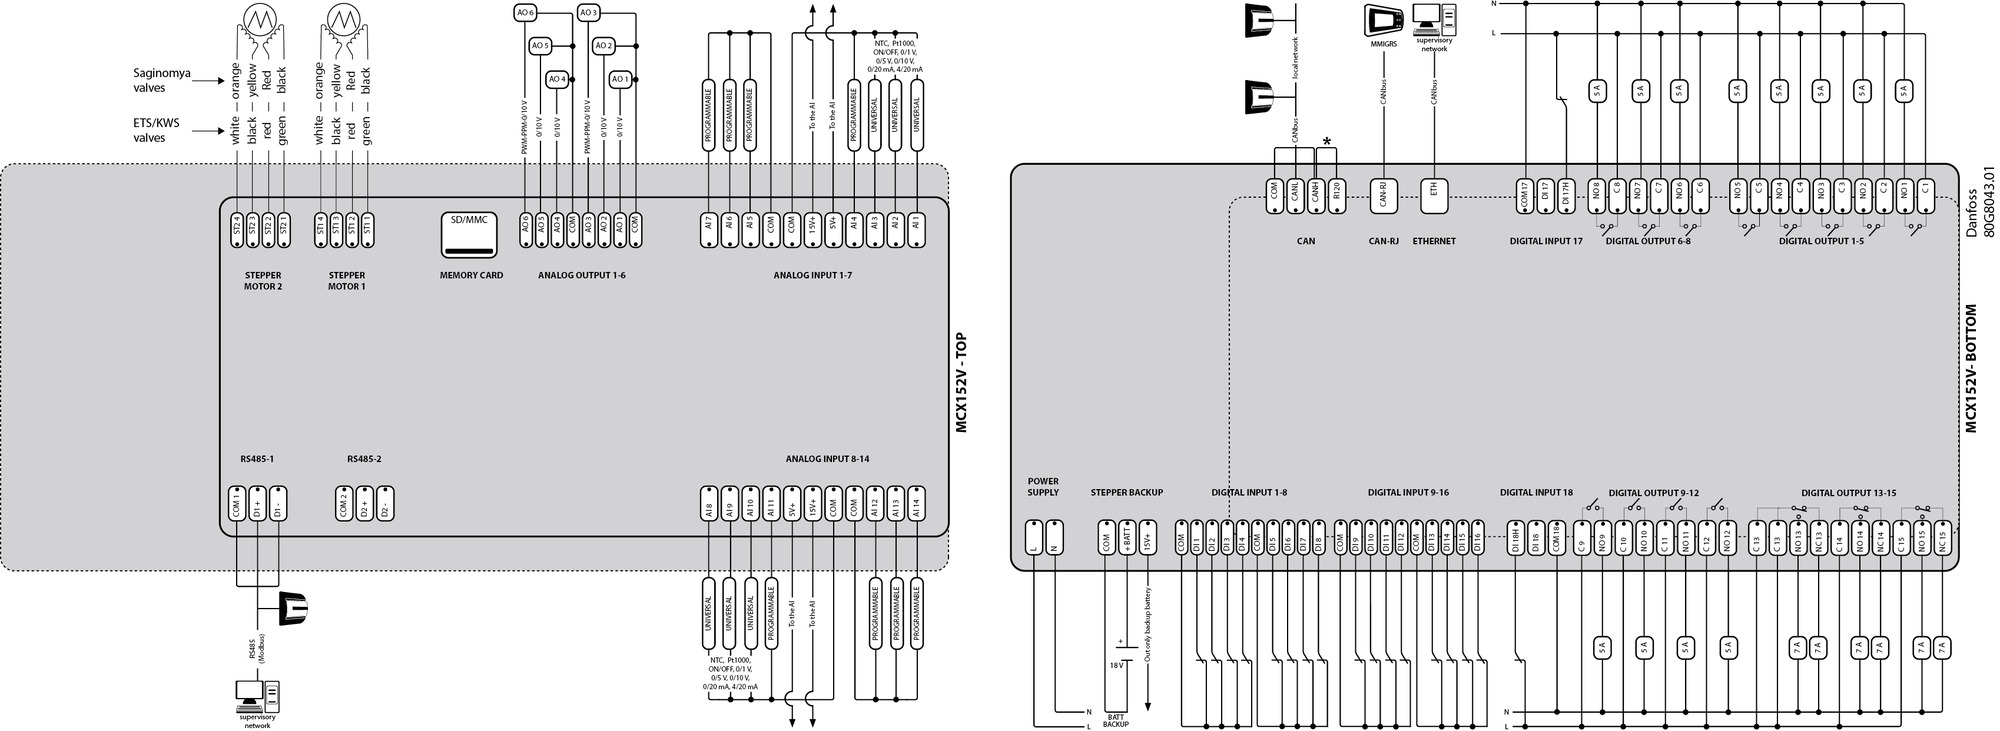 Программируемый контроллер Danfoss mcx15b 24v rs485 s к